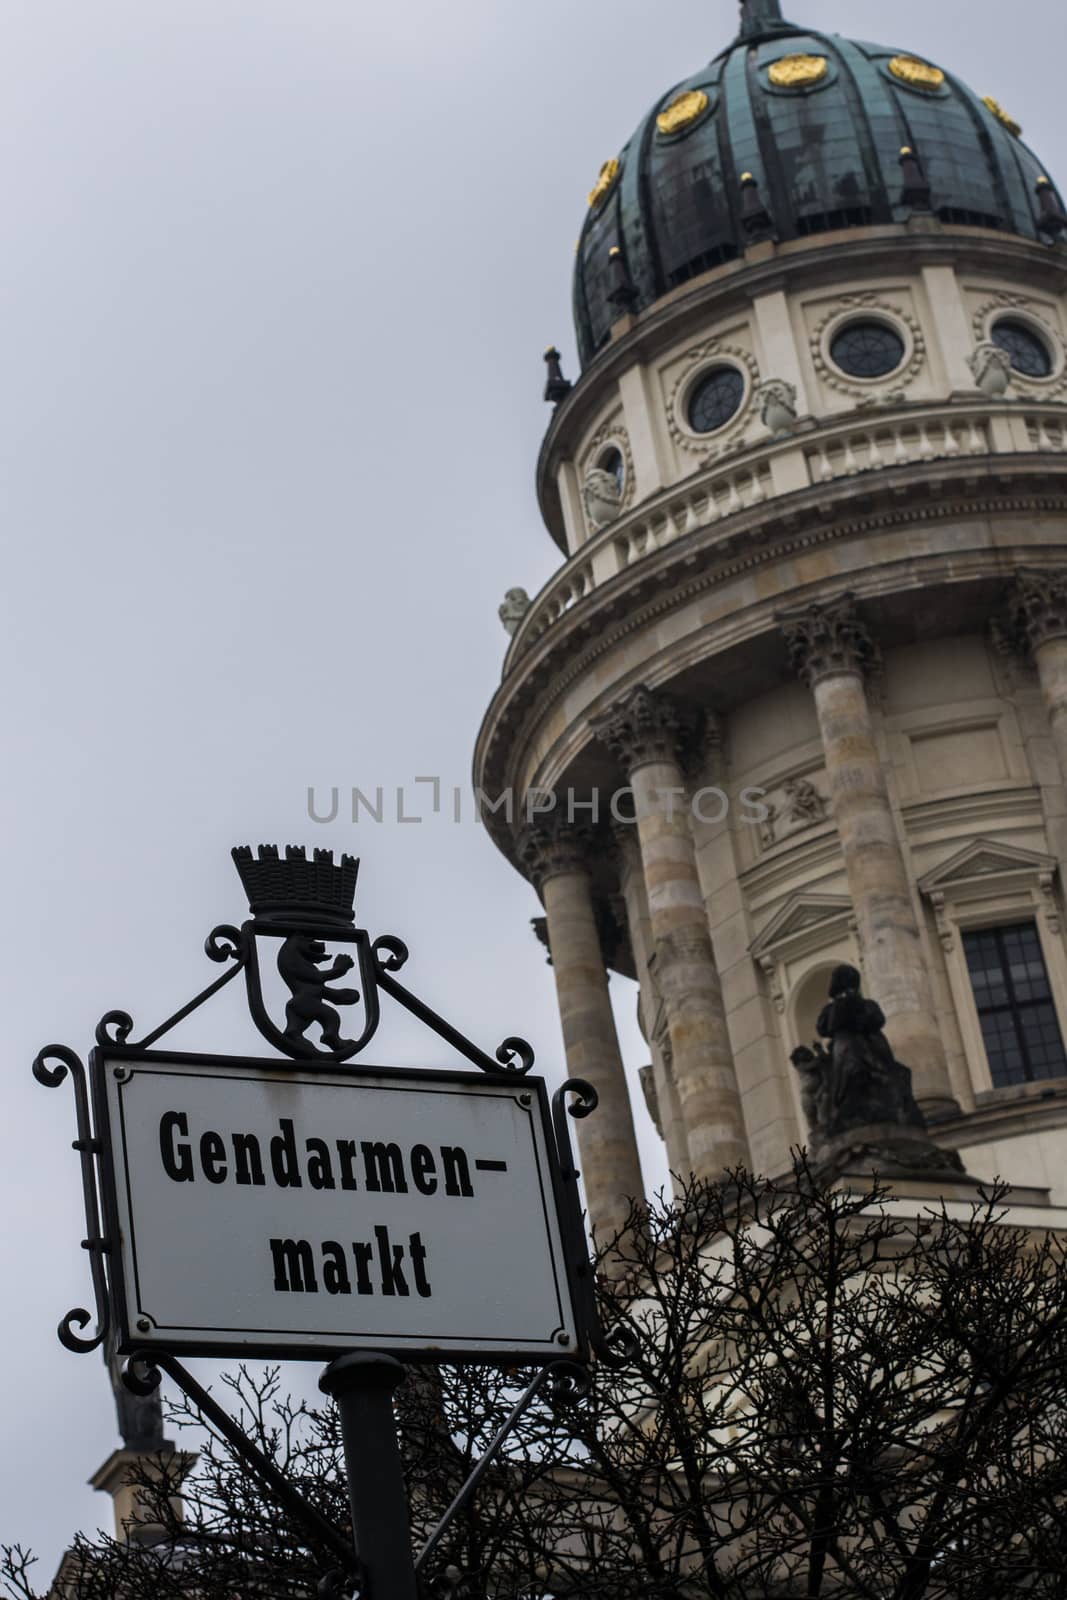 Gendarmenmarkt signboard in Berlin, Germany by kb79